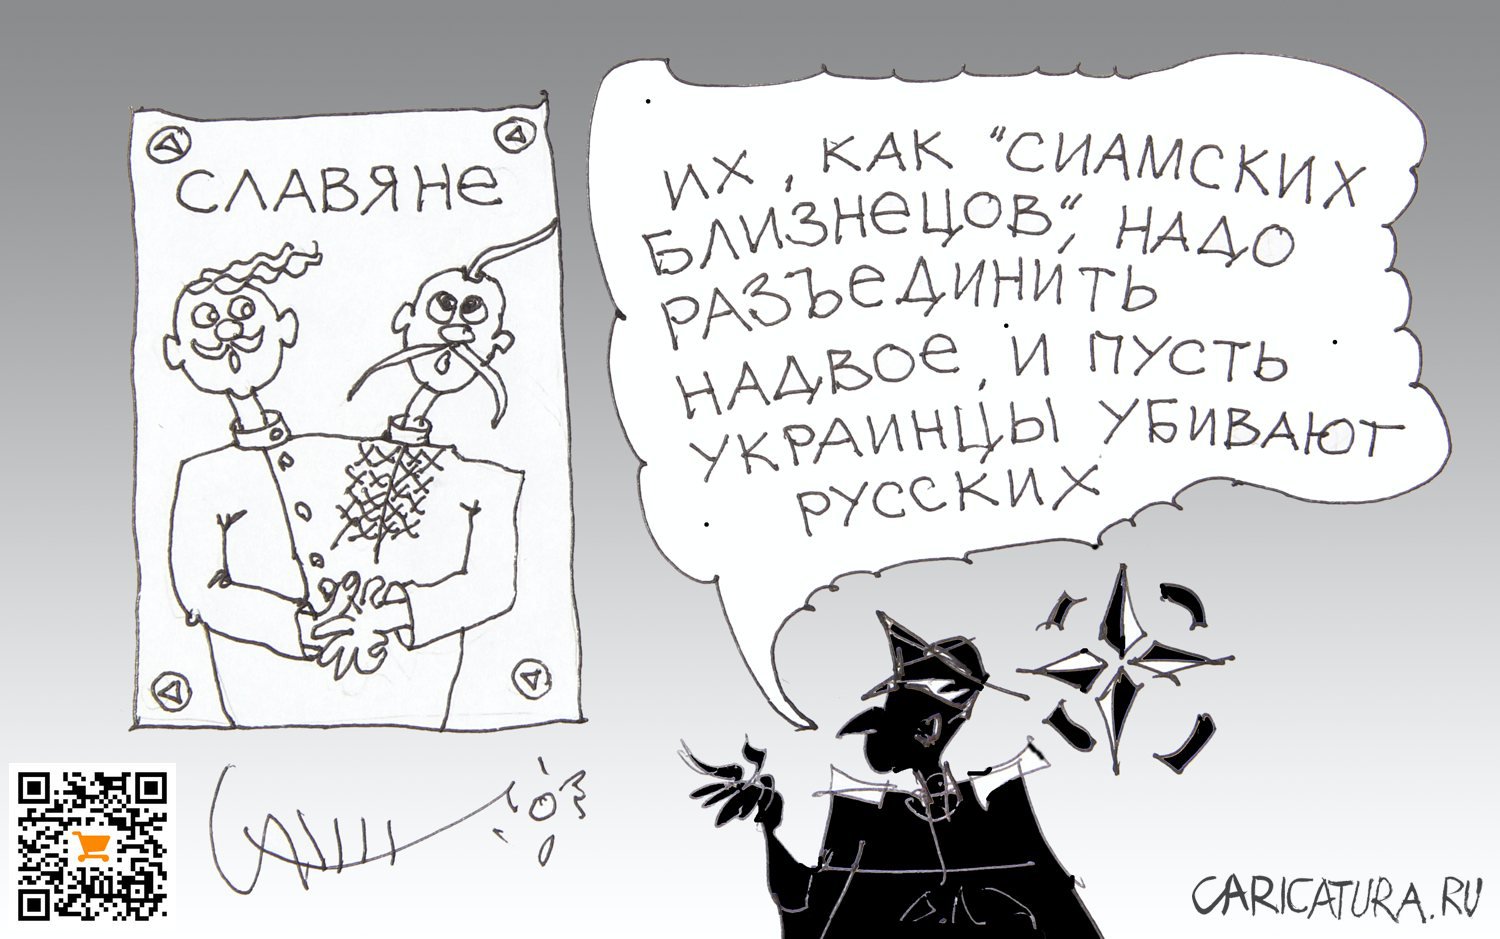 Карикатура "Славянская трагедия", Юрий Санников